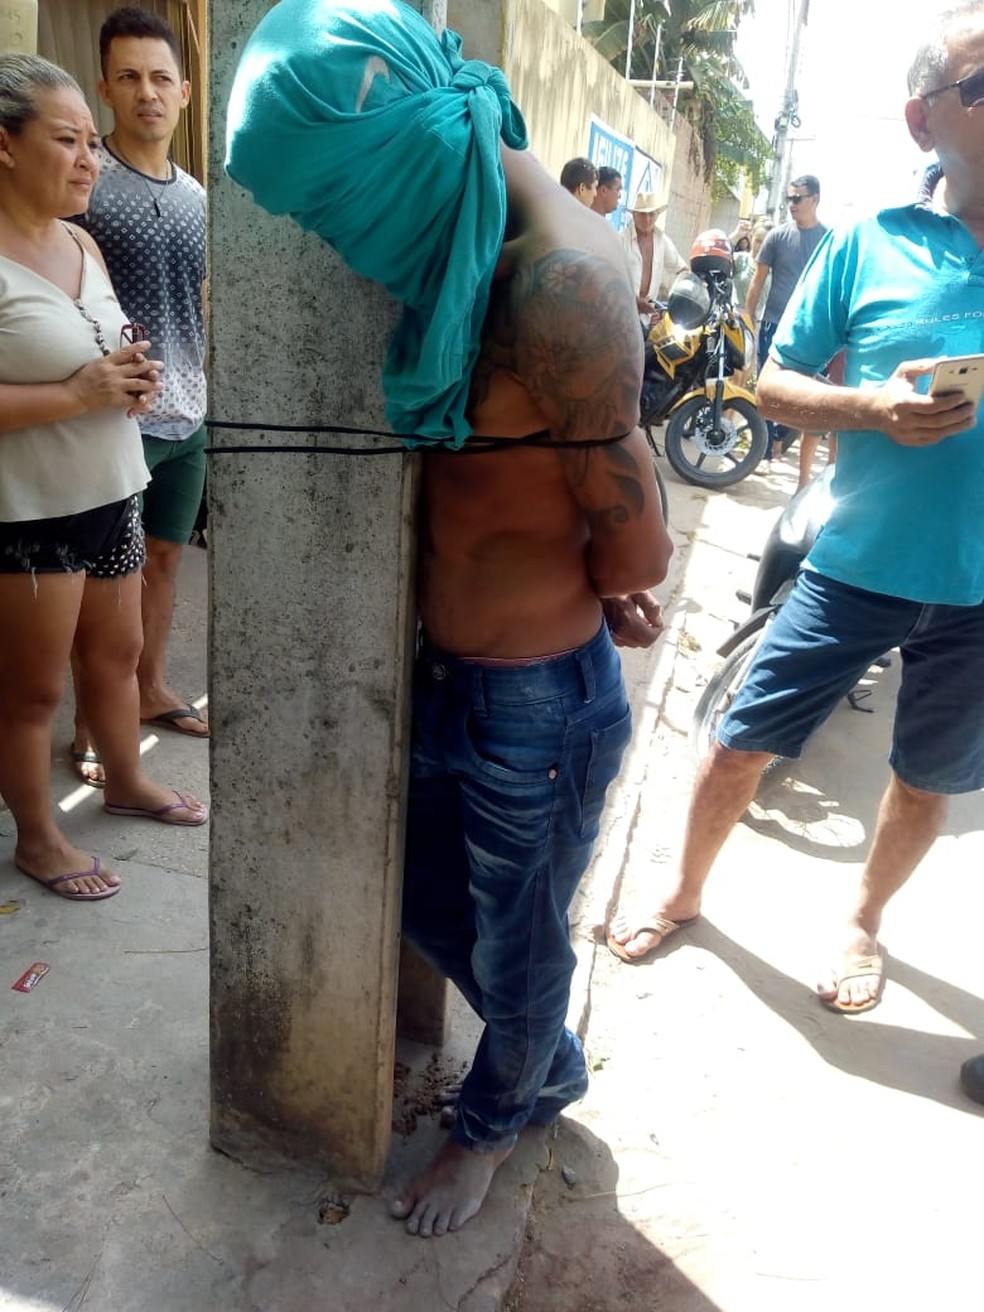 População amarra em poste suspeito de roubos na cidade de Pacajus, no Ceará. — Foto: Arquivo pessoal